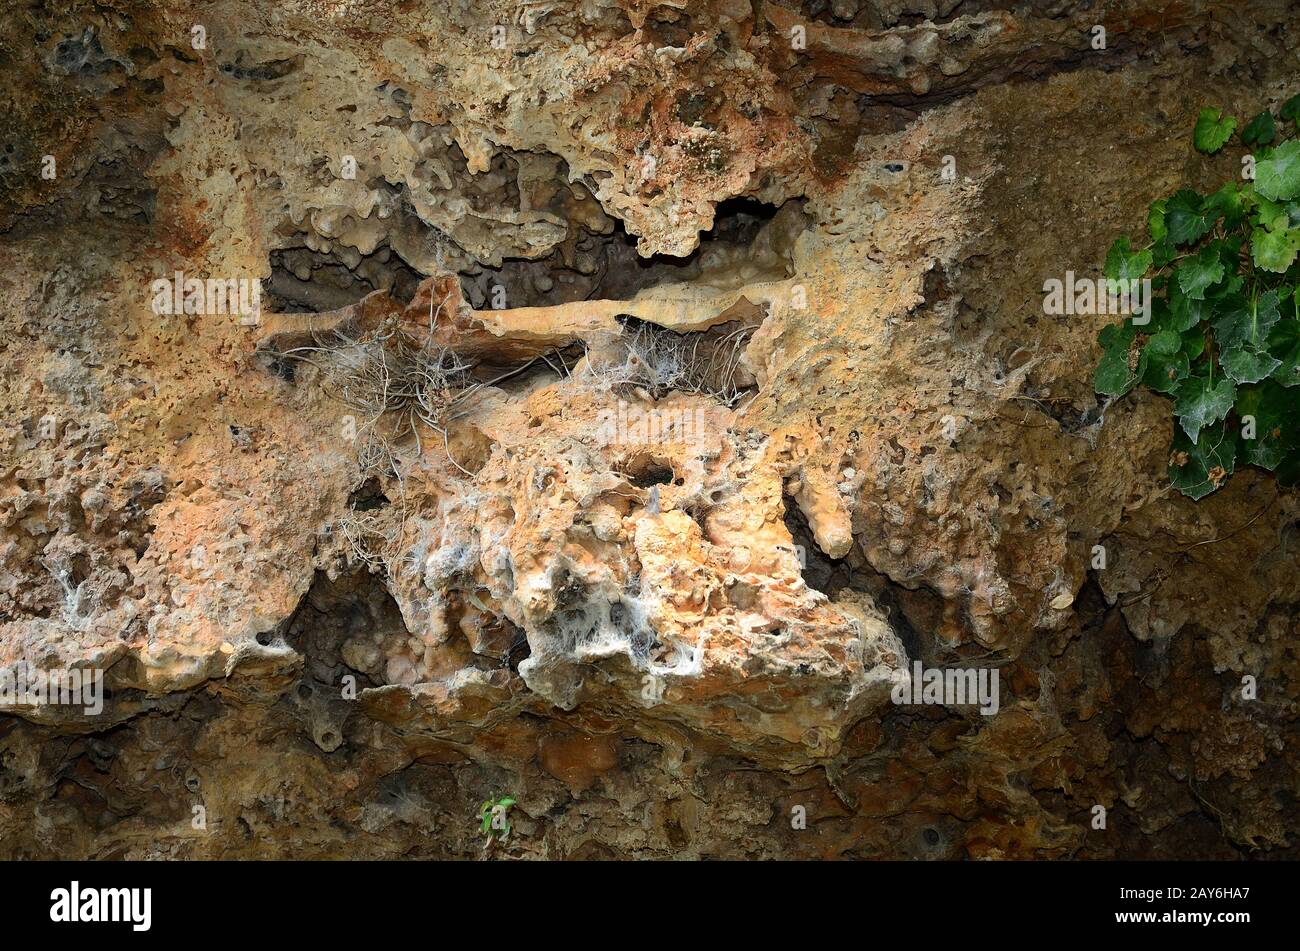 cueva de karst, cueva, depósitos litorales, depósitos pelágicos, Foto de stock